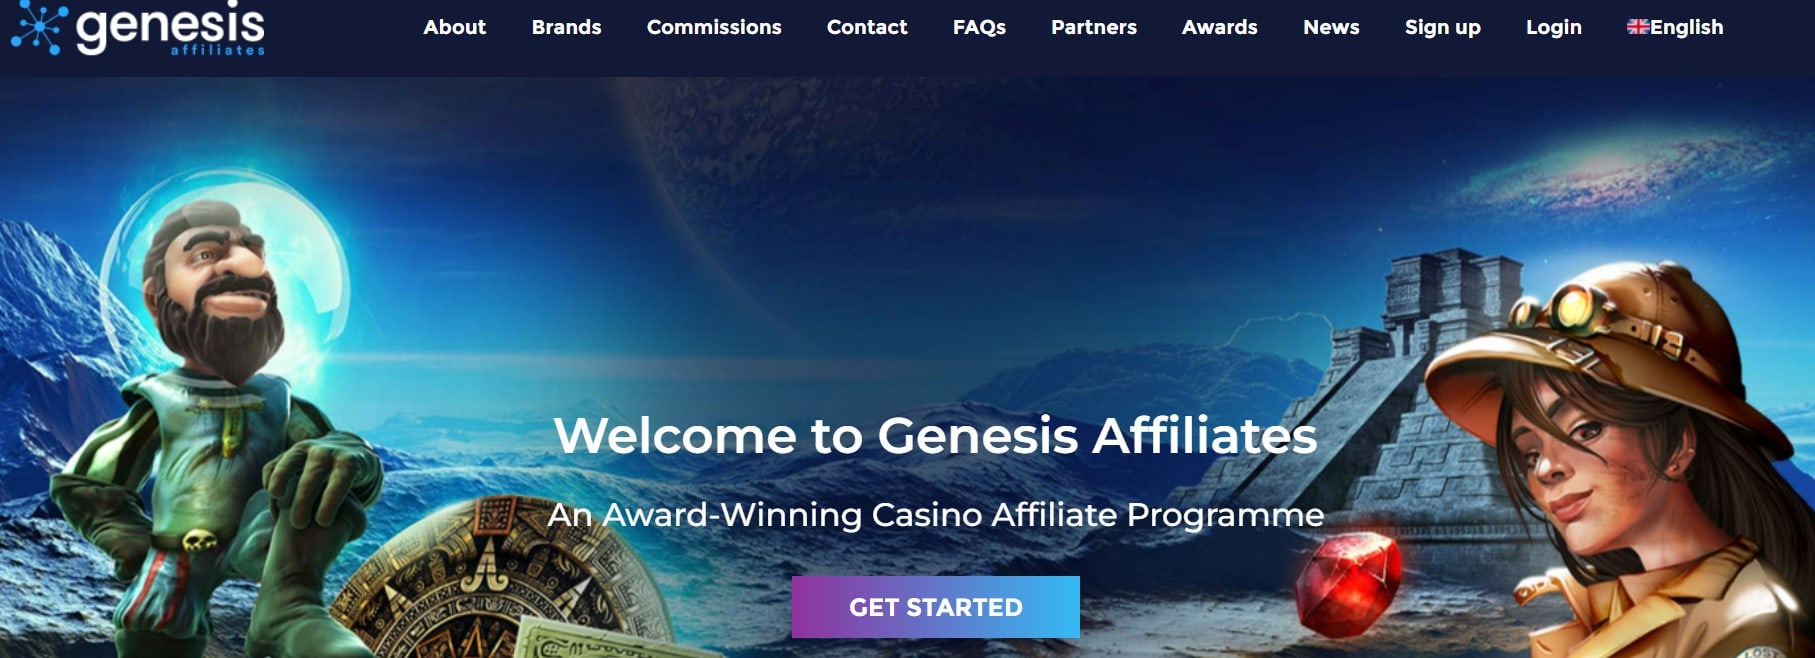 Genesis Casino Affiliate Program